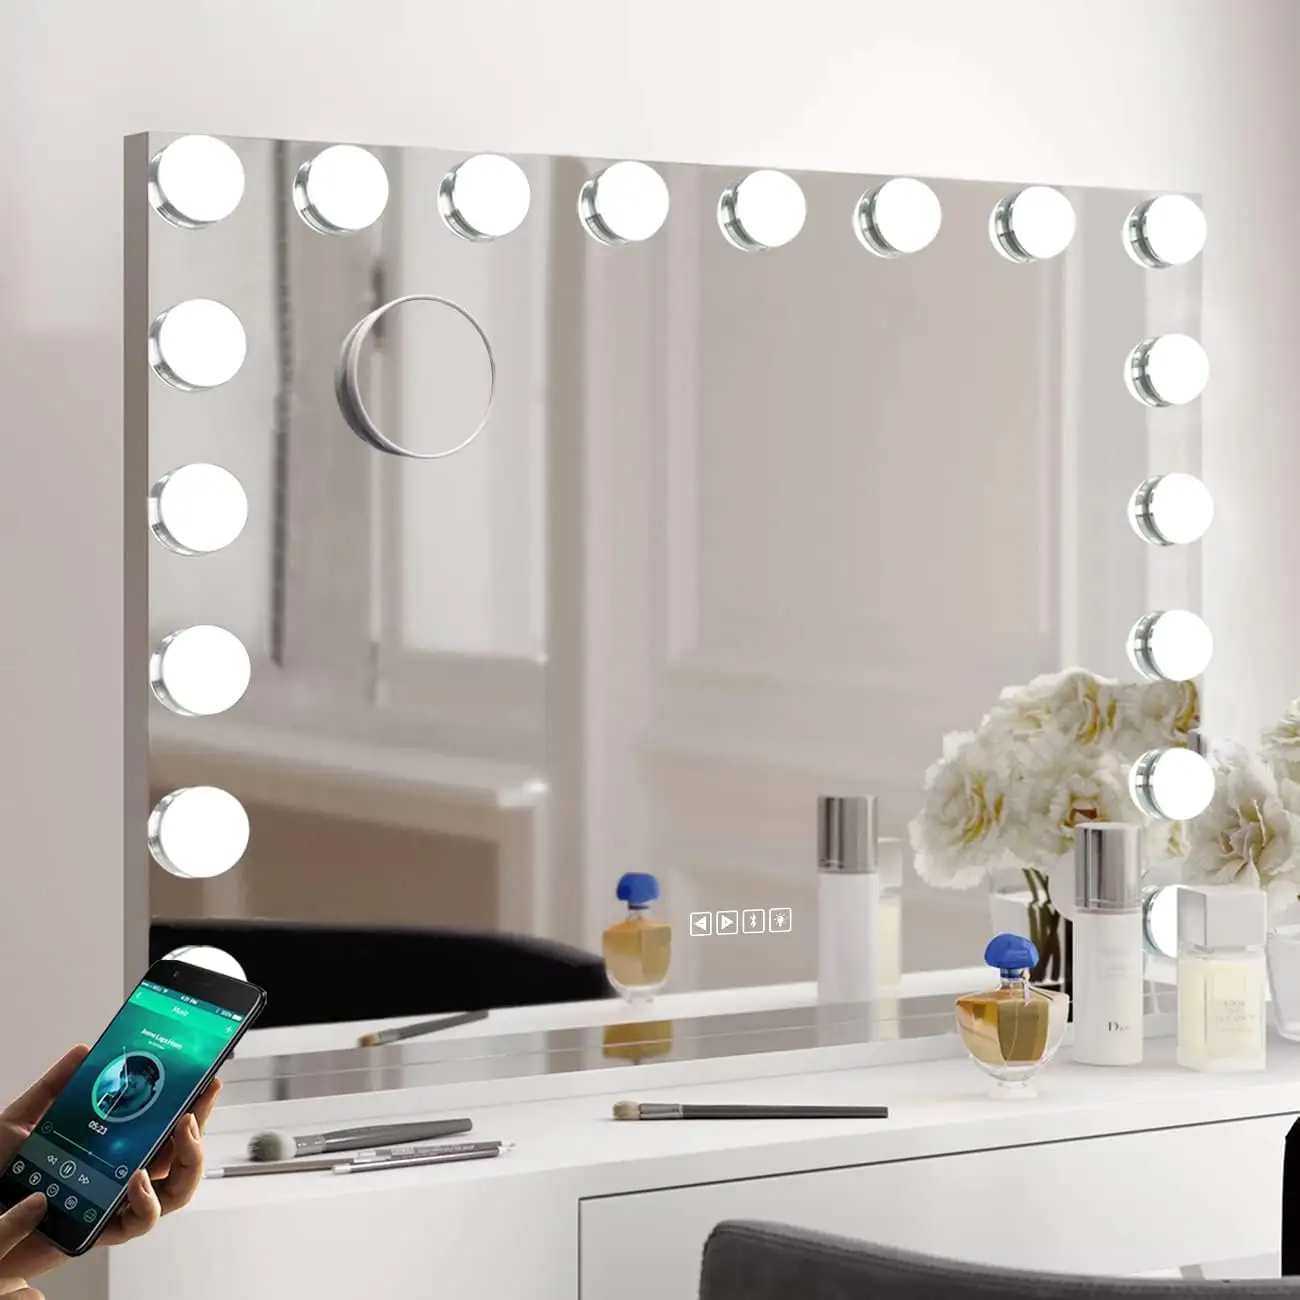 Wohn möbel Bluetooth-Lautsprecher Schmink tisch 18 Glühbirnen beleuchteten Kosmetik spiegel mit Musik-Player und Anruf